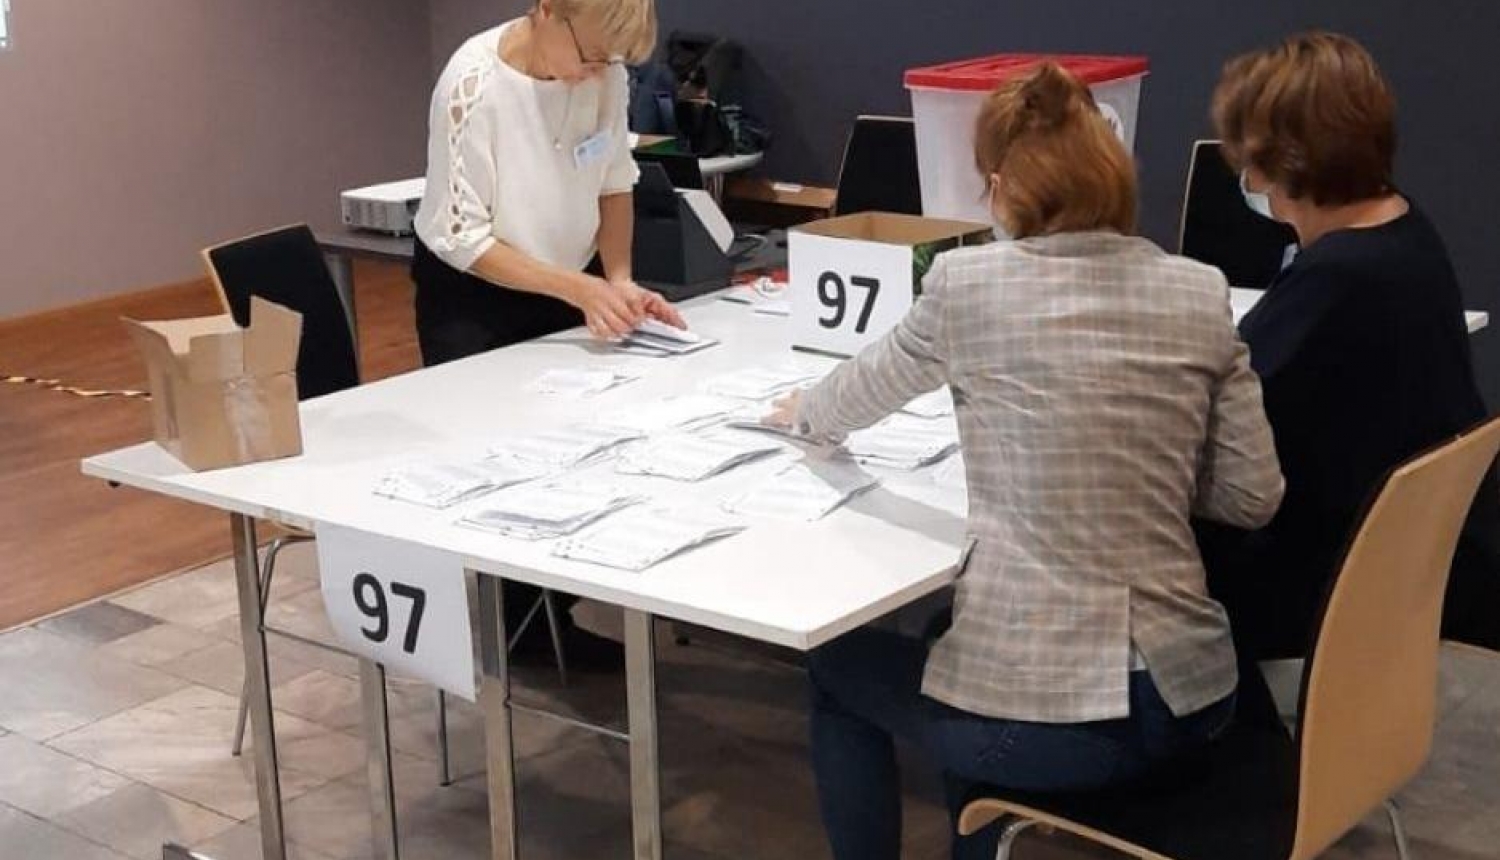 Pēc rezultātu pārskaitīšanas trīs vēlēšanu iecirkņos, mandātu sadalījums starp kandidātu sarakstiem un ievēlētie deputāti nemainās